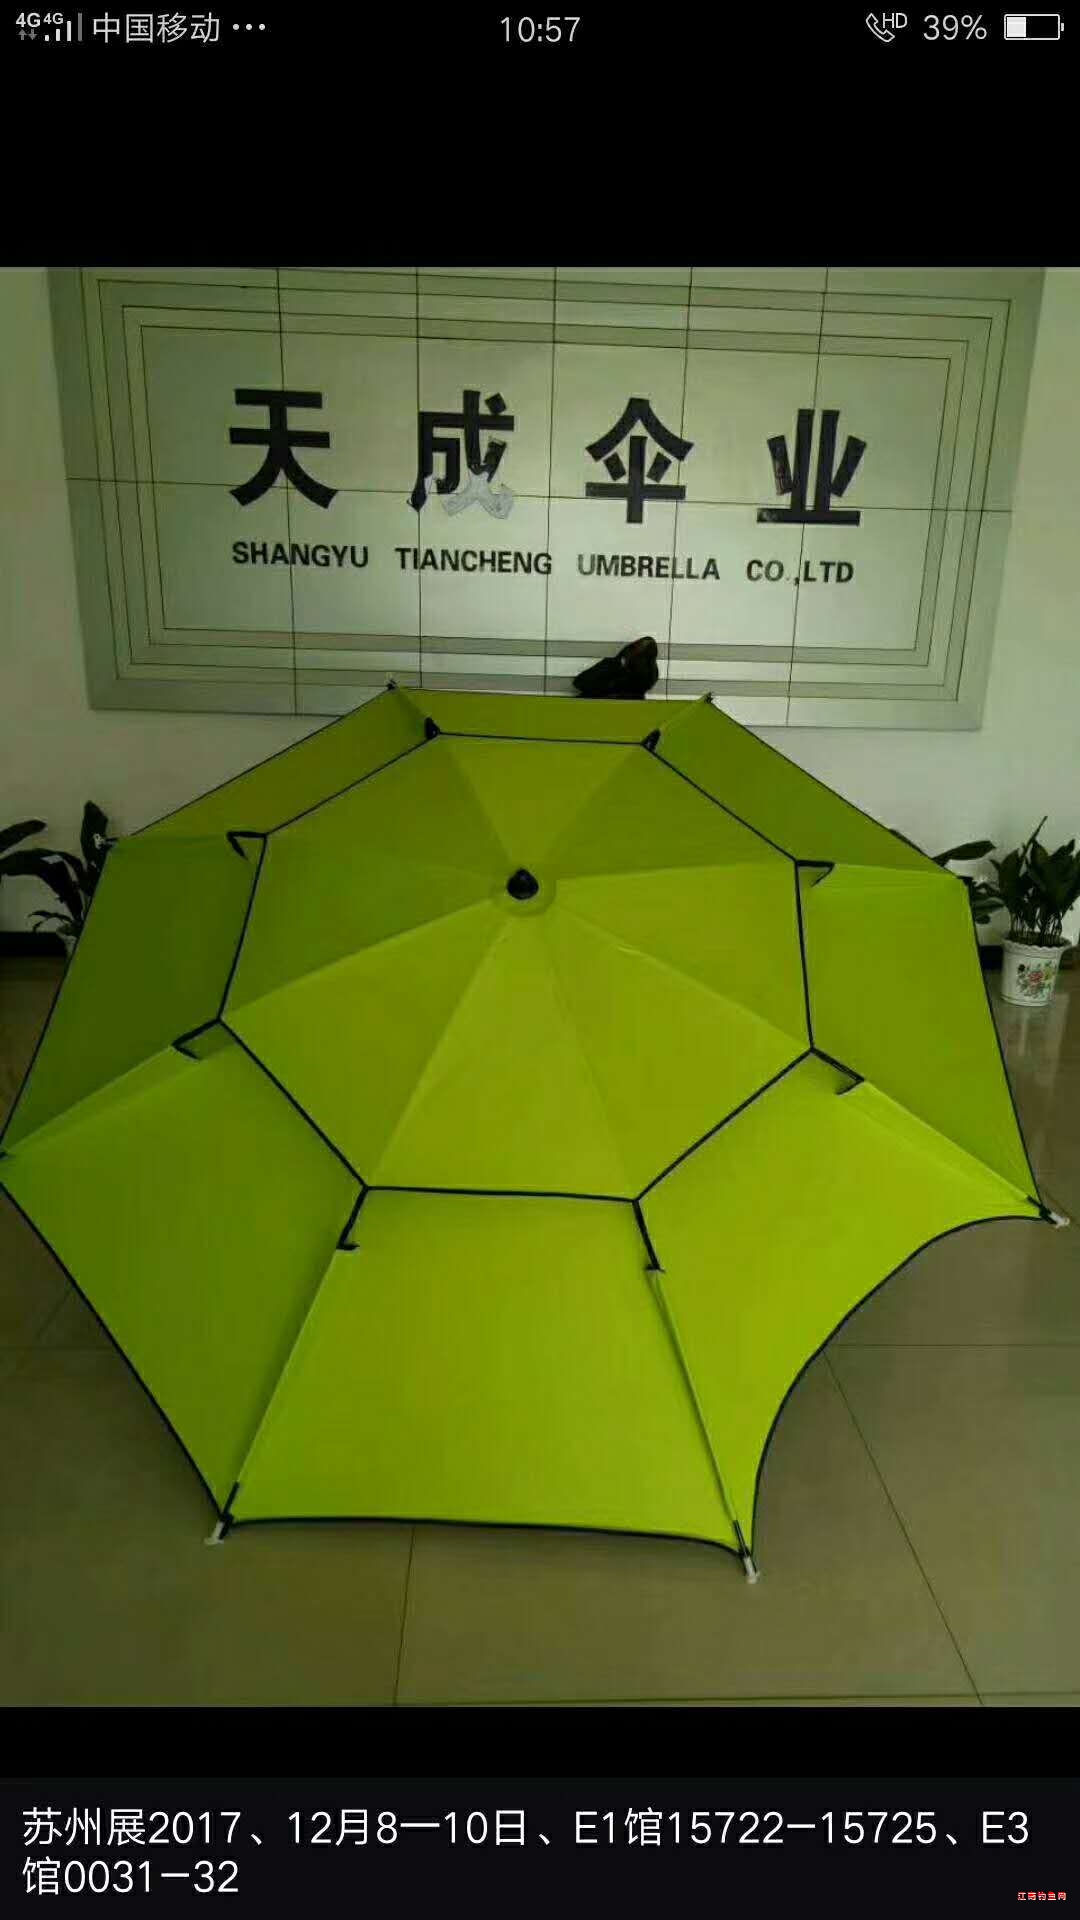 苏州上花2018年夏季渔具展览会:天成钓鱼伞欢